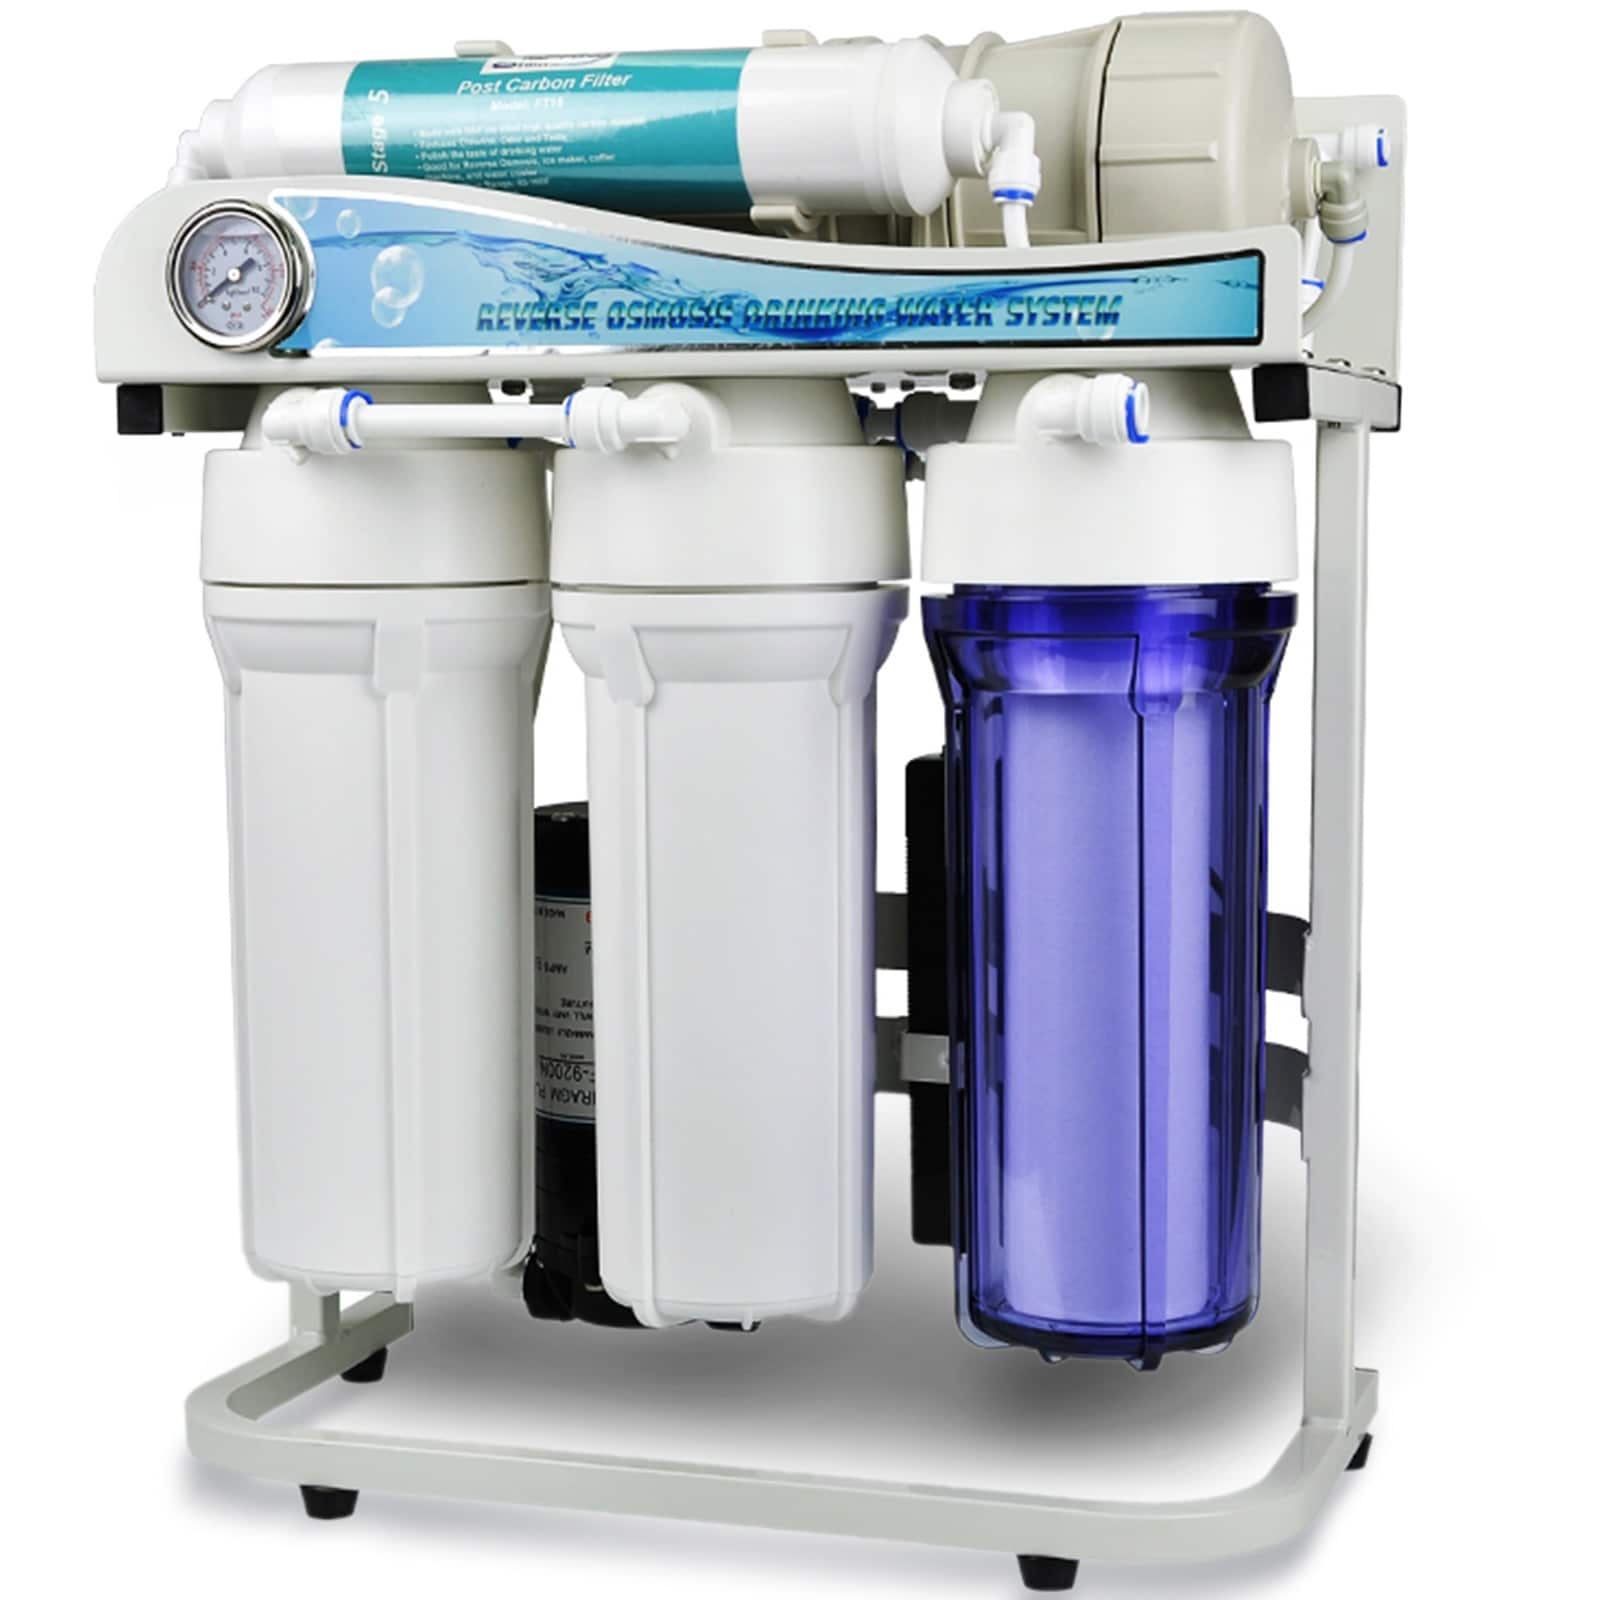 Отзывы вода обратный осмос. Фильтры Water quality Reverse Osmosis System. Ro-600 обратный осмос. Фильтр для воды Reverse Osmosis. Фильтр обратного осмоса 75.